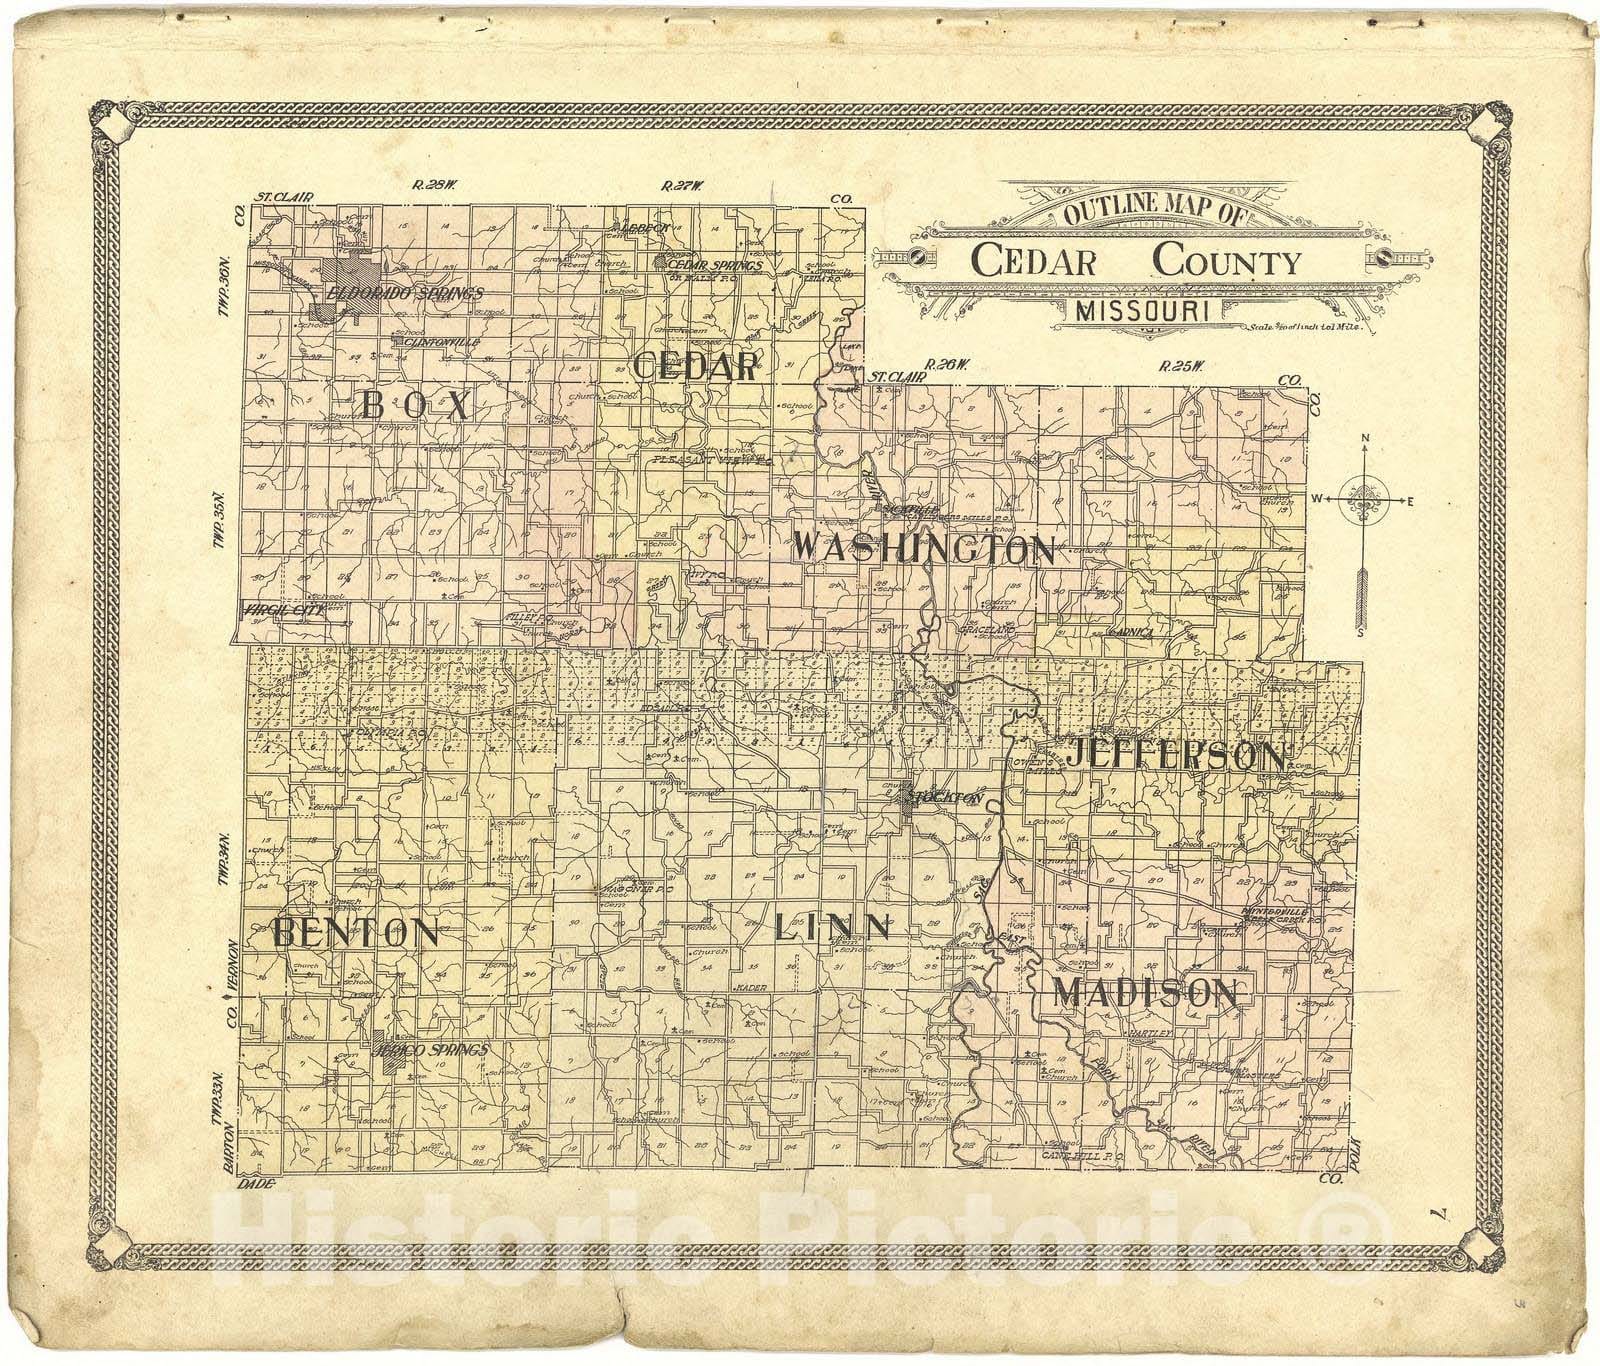 Historic 1908 Map - Standard Atlas of Cedar County, Missouri - Clintonville; Sackville; Paynterville